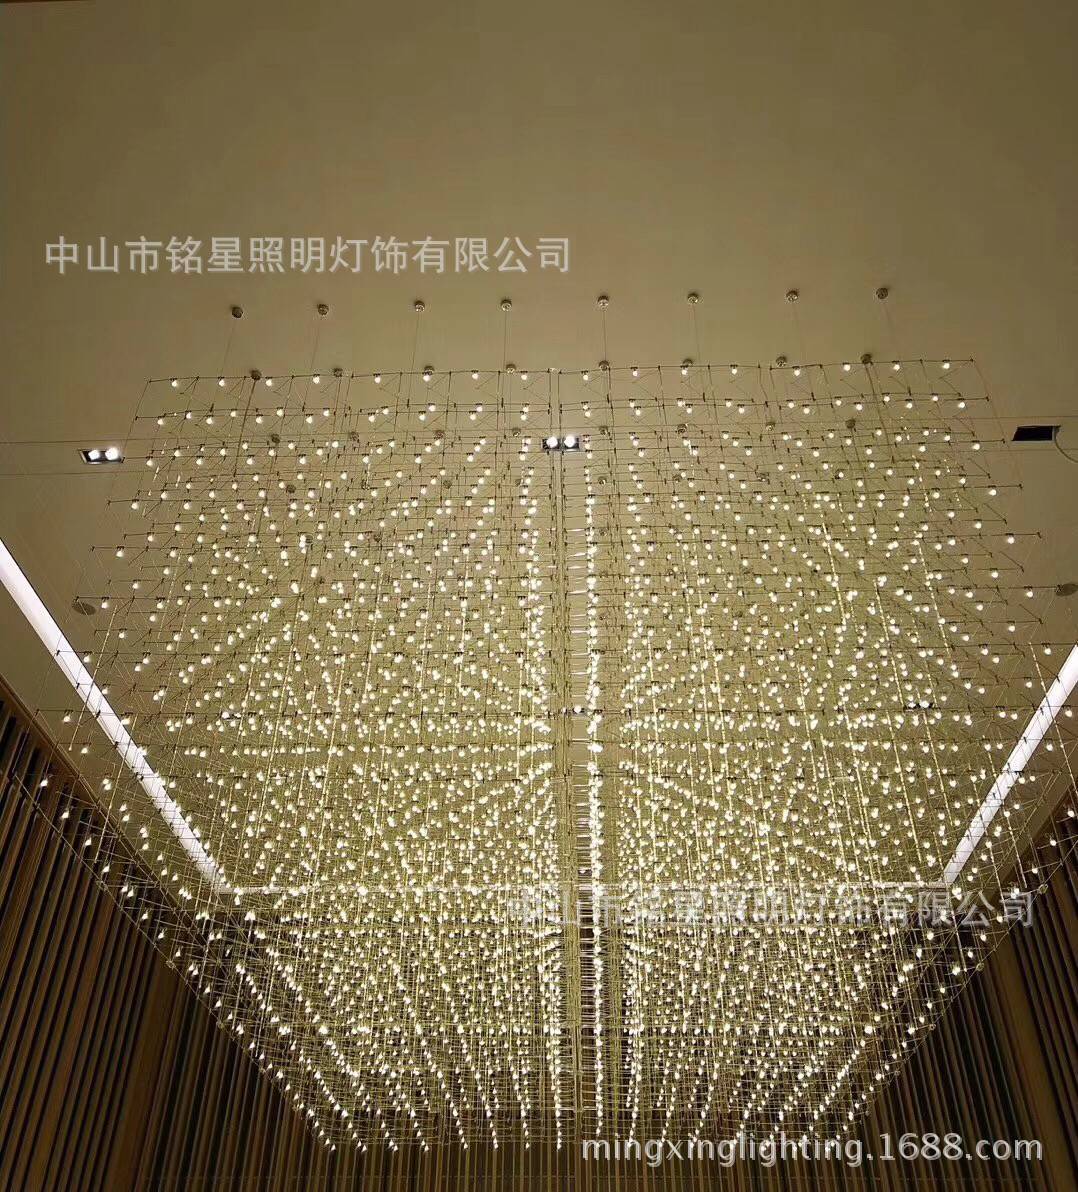 专业酒店大堂大型光立方吊灯厂家定制售楼部展厅LED光立方体灯具示例图19